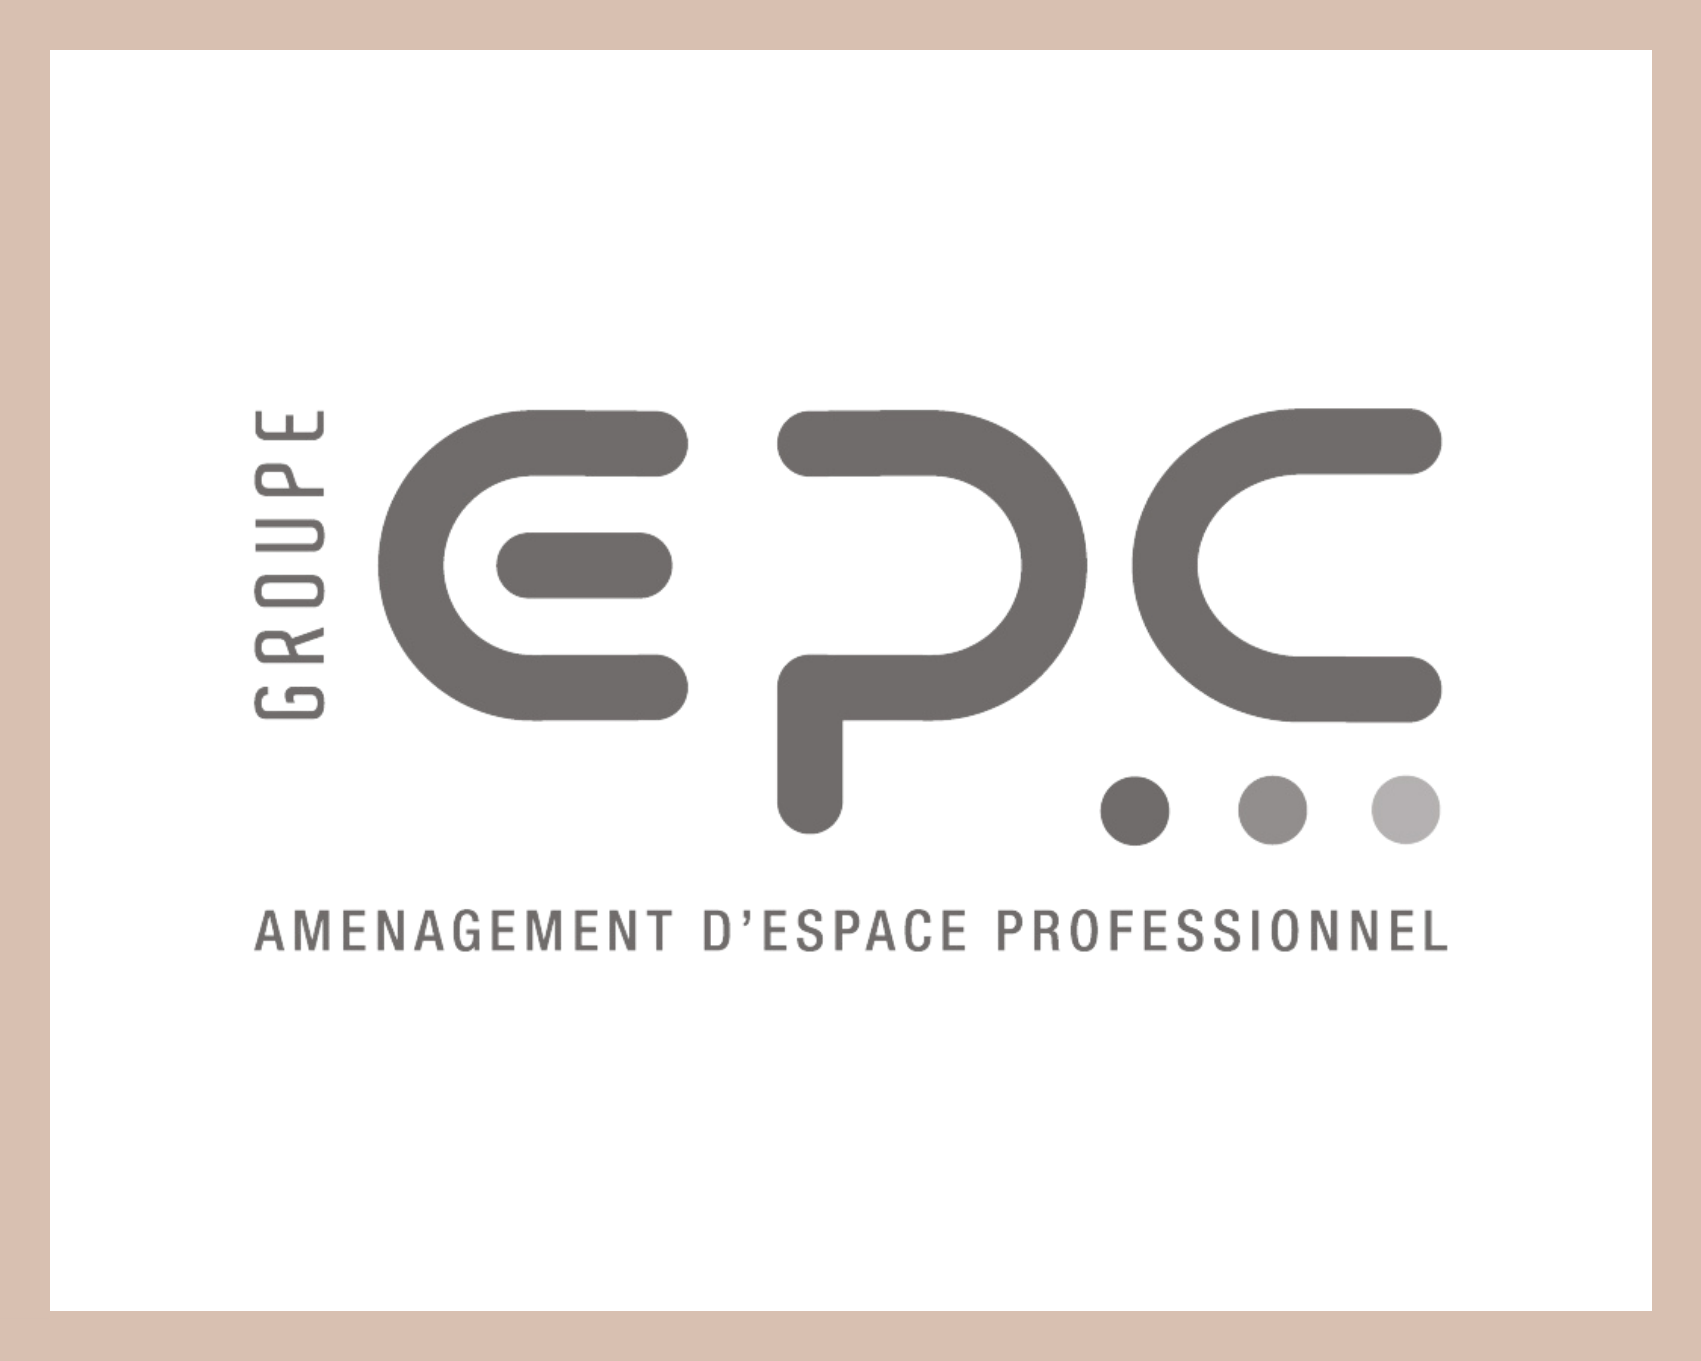 Carte de la localisation d'EPC